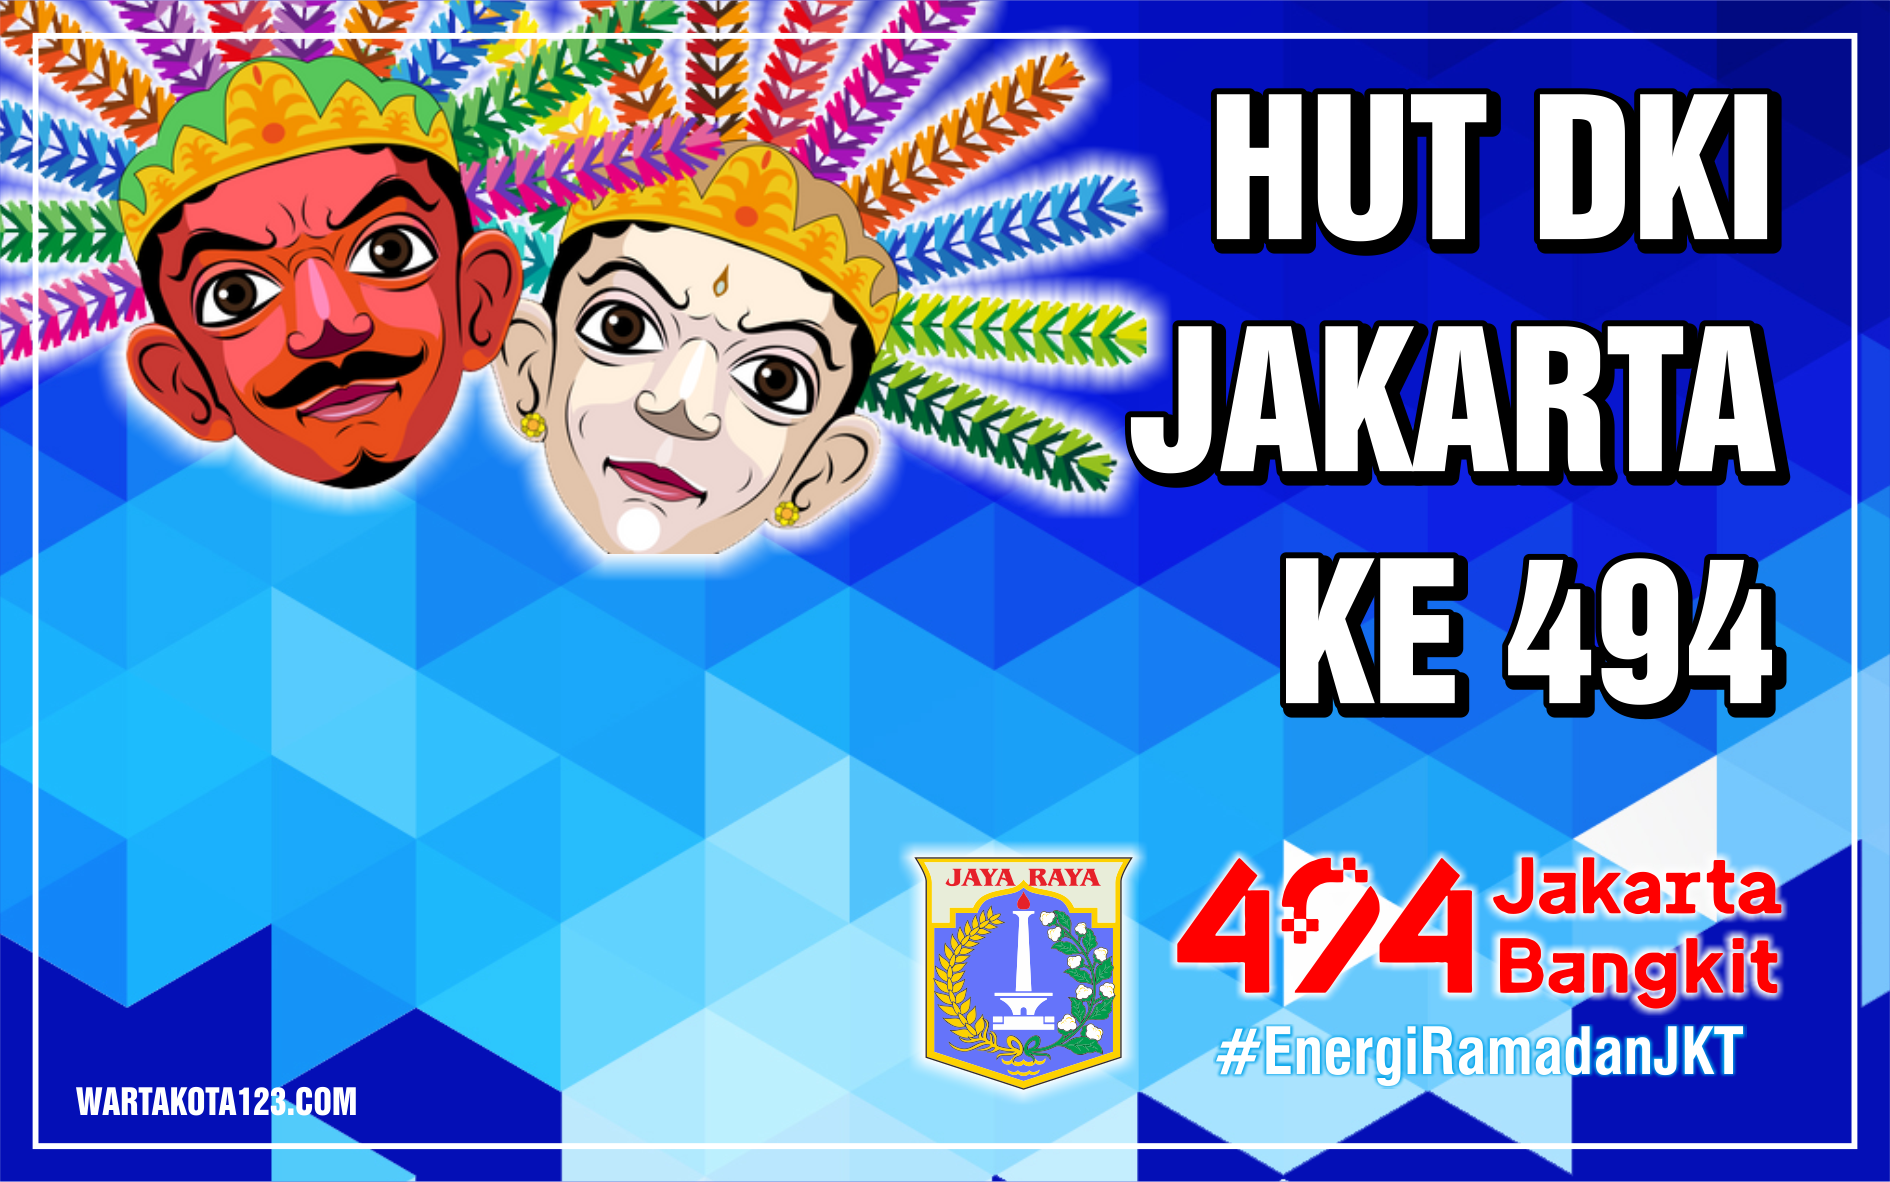 Poster HUT DKI Jakarta 2021